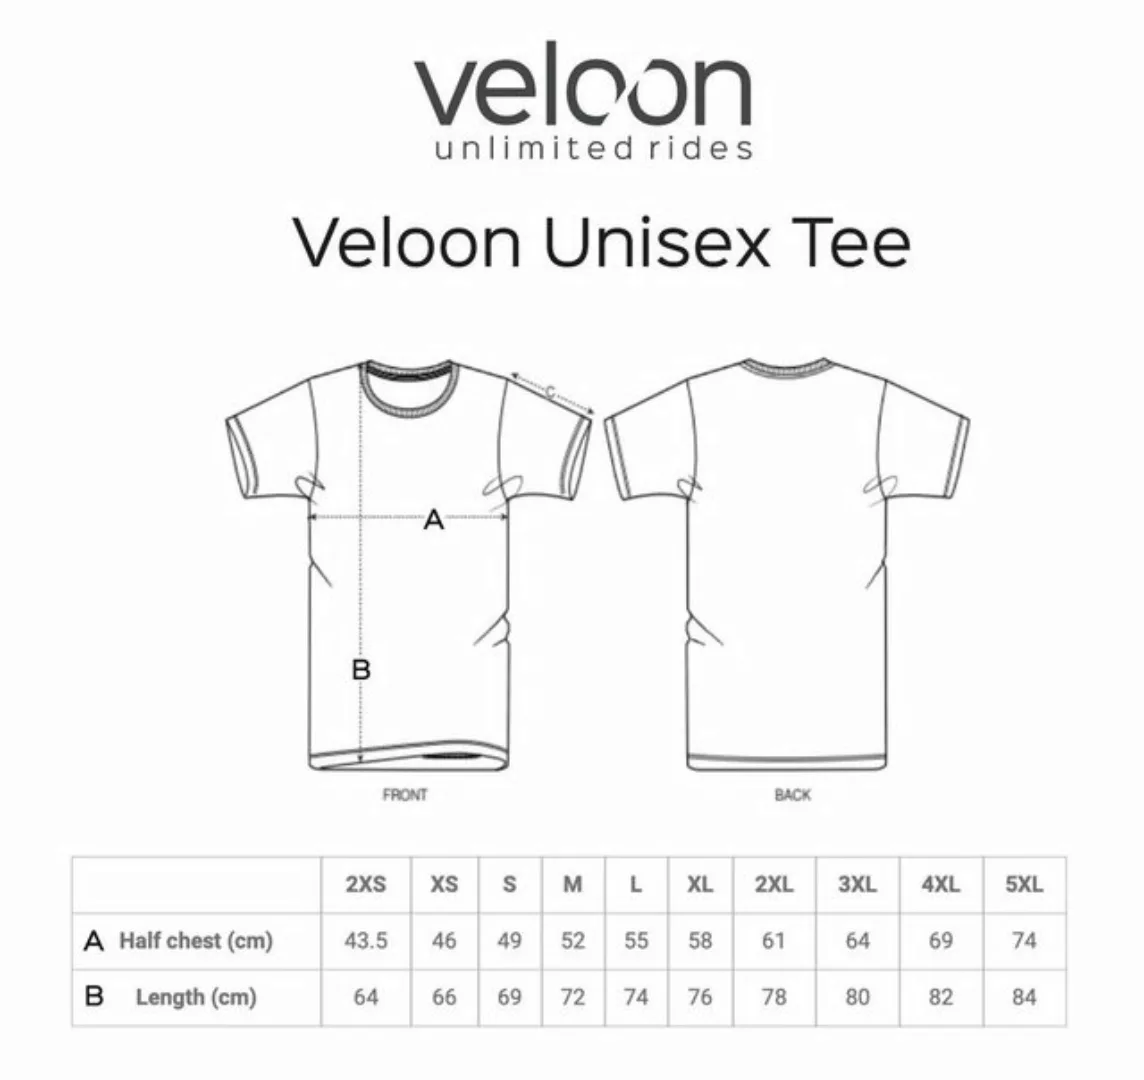 Veloon T-Shirt Unlimited Rides Pink günstig online kaufen